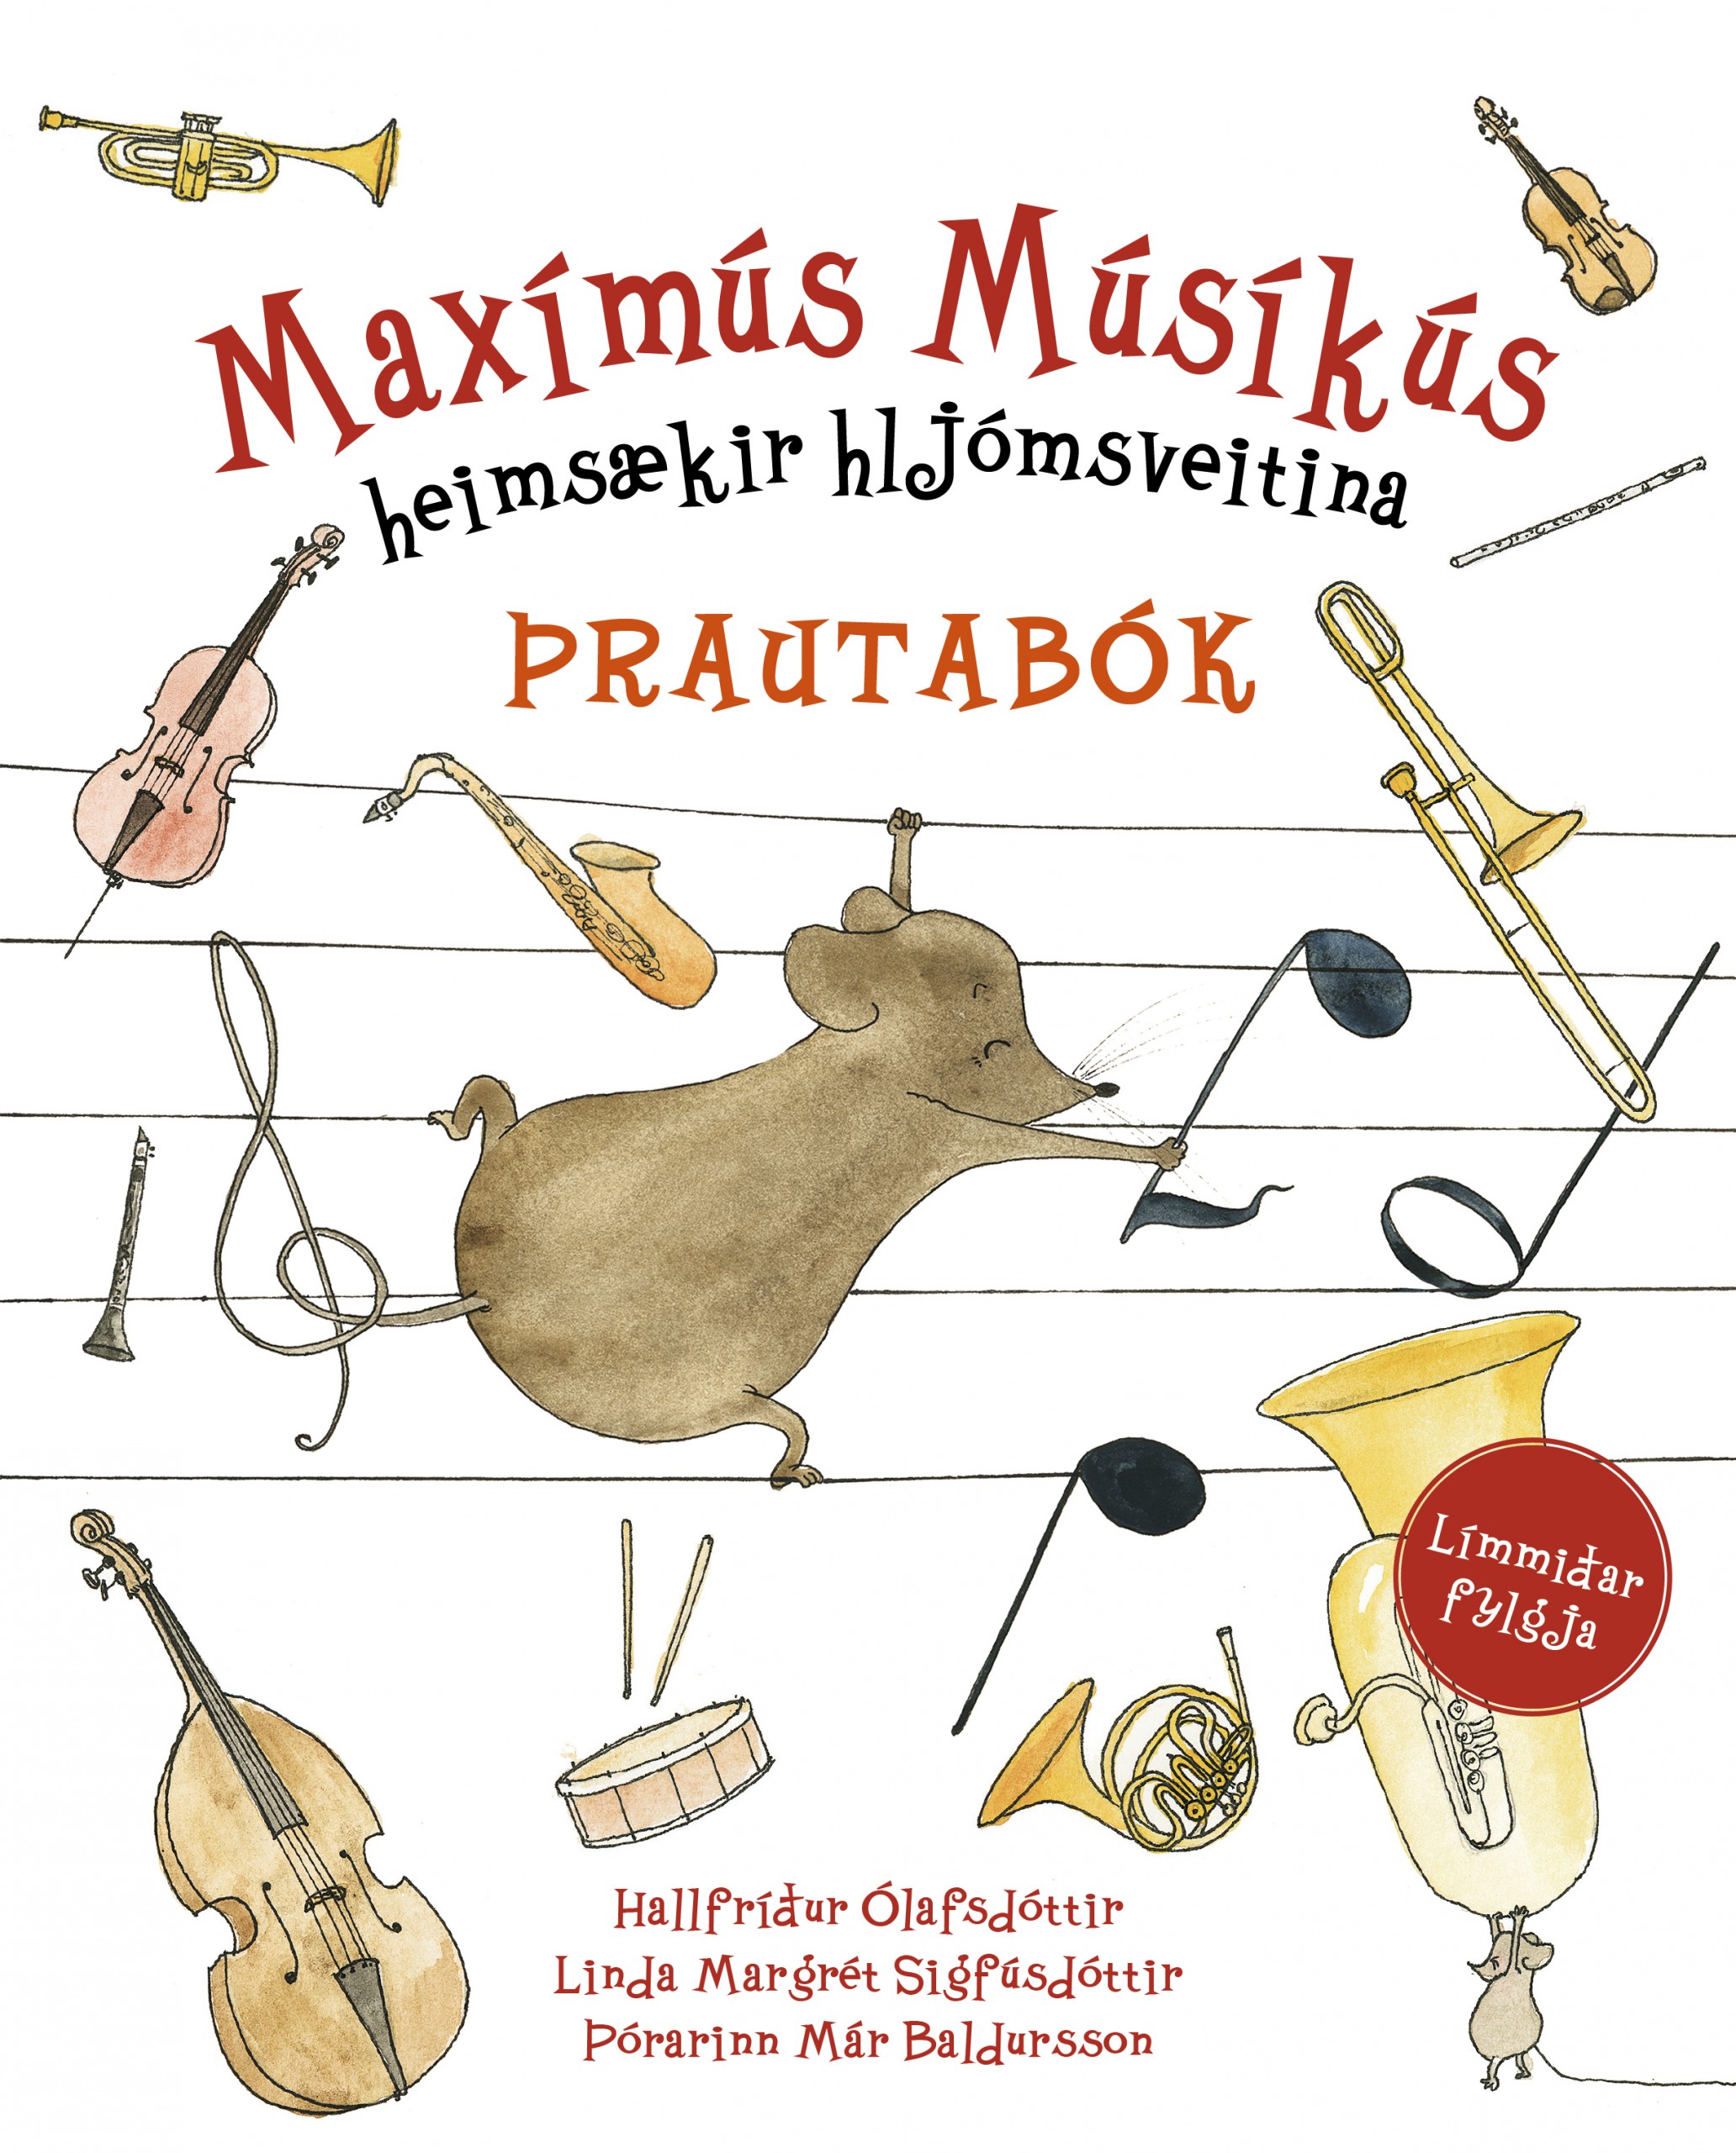 Maximus Musicus Explores Iceland (2018)